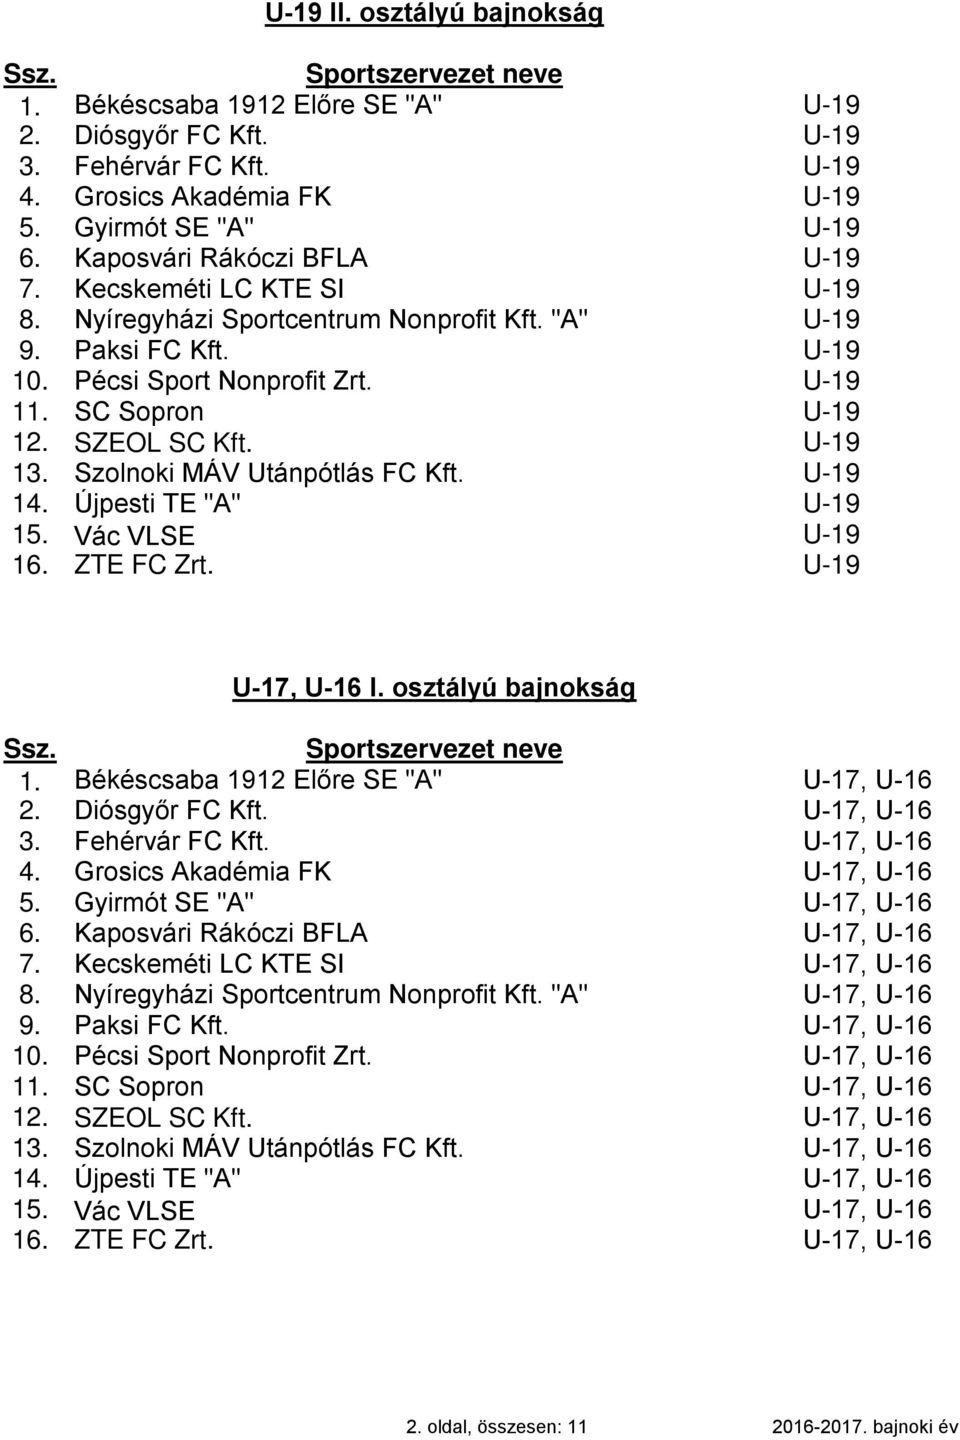 Szolnoki MÁV Utánpótlás FC Kft. U-19 14. Újpesti TE "A" U-19 15. Vác VLSE U-19 ZTE FC Zrt. U-19 U-17, U-16 I. osztályú bajnokság 1. Békéscsaba 1912 Előre SE "A" U-17, U-16 2. Diósgyőr FC Kft.